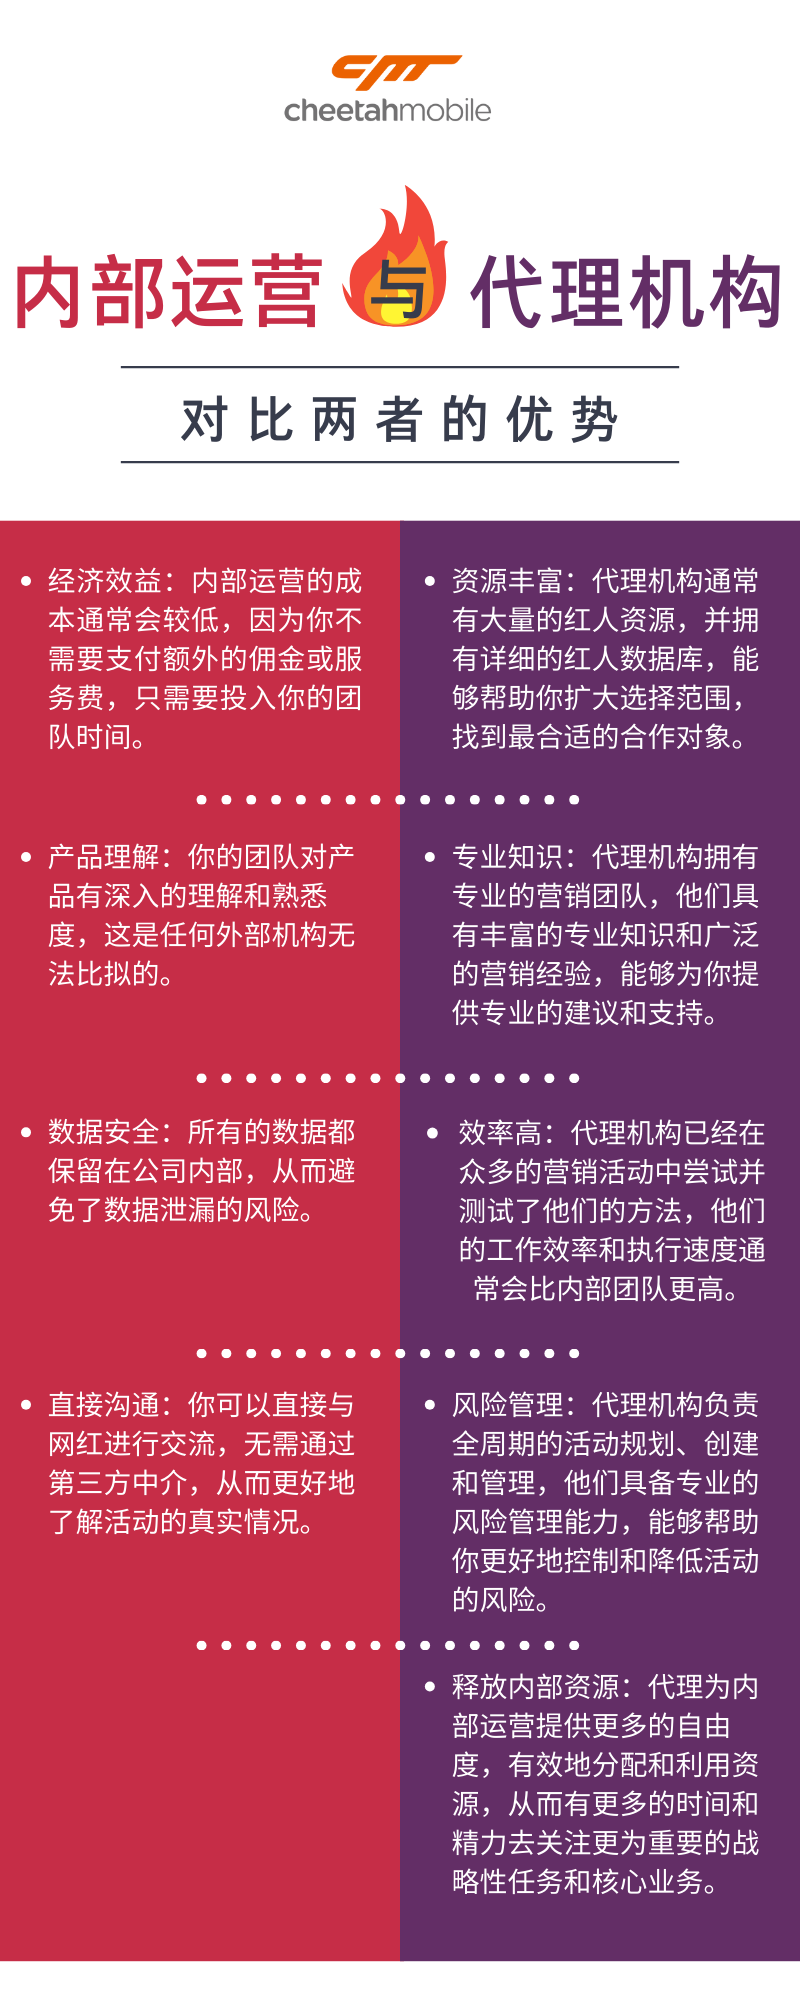 粉紫色比较两种类型的作品小说创意文化分享中文信息图表.png